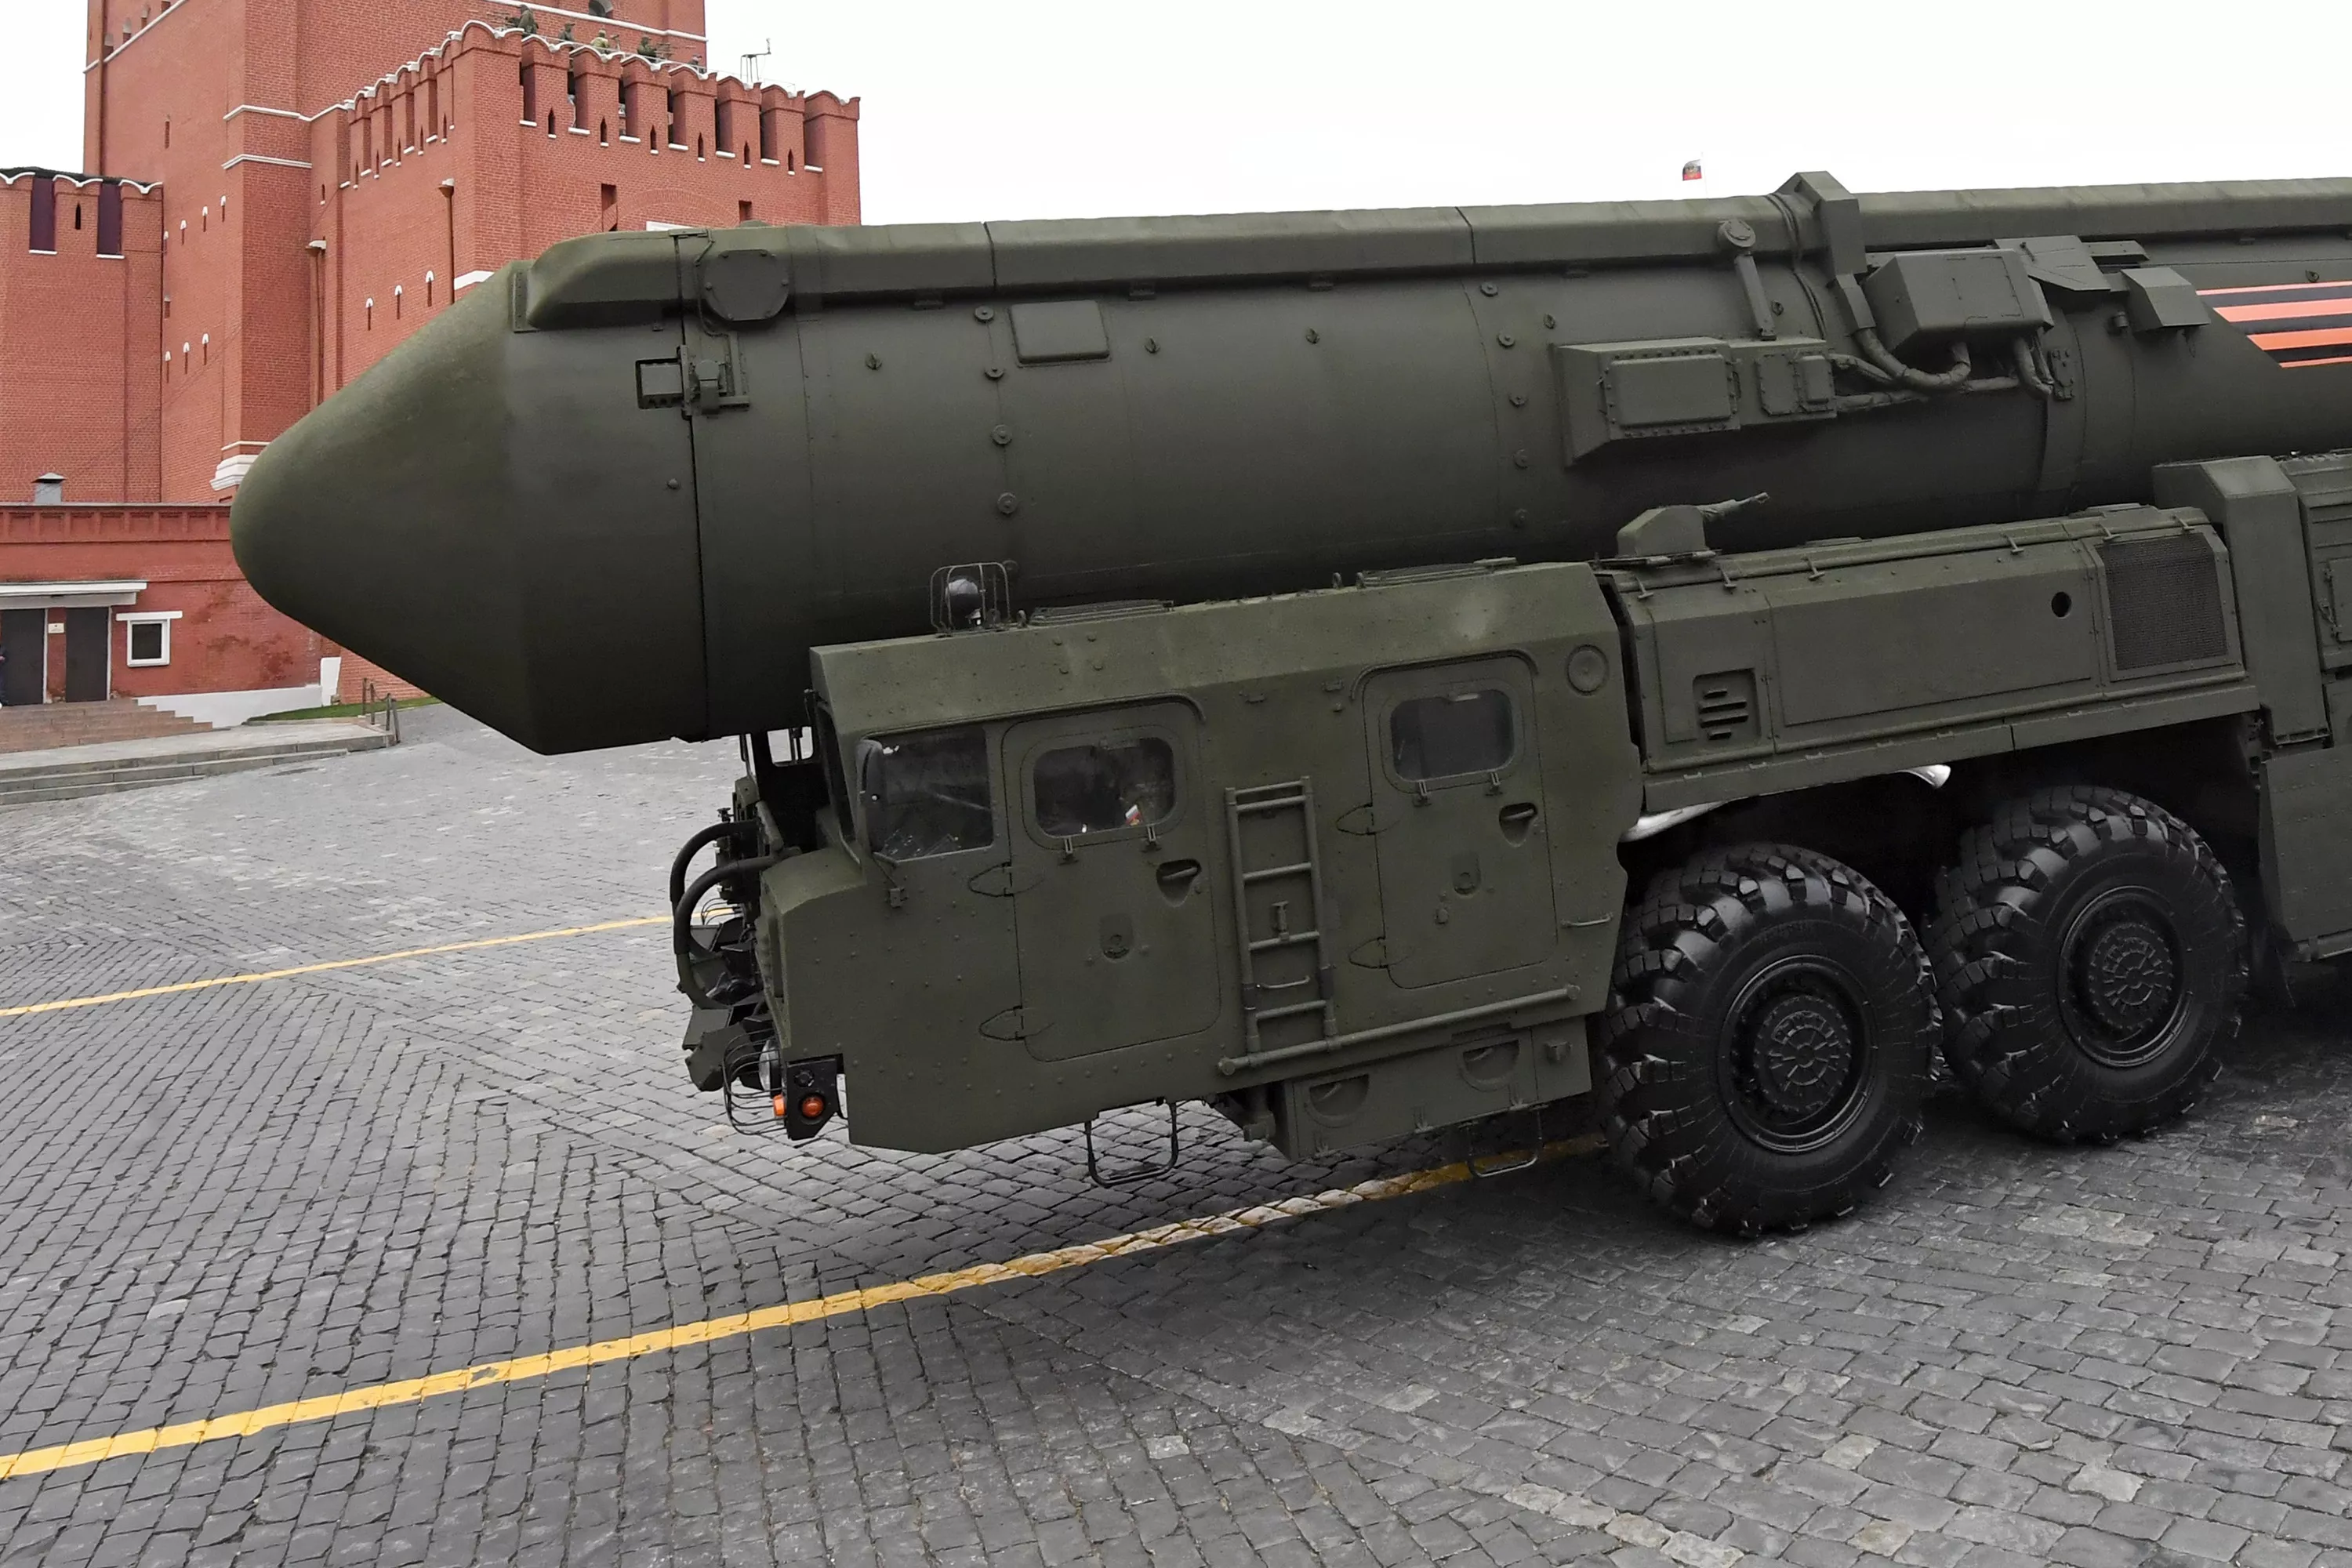 Los rusos han lanzado el misil balístico intercontinental SS-27 Mod 2 con un alcance de 12.000 kilómetros, que puede transportar una cabeza nuclear con una potencia de hasta 500 kilotones.-6